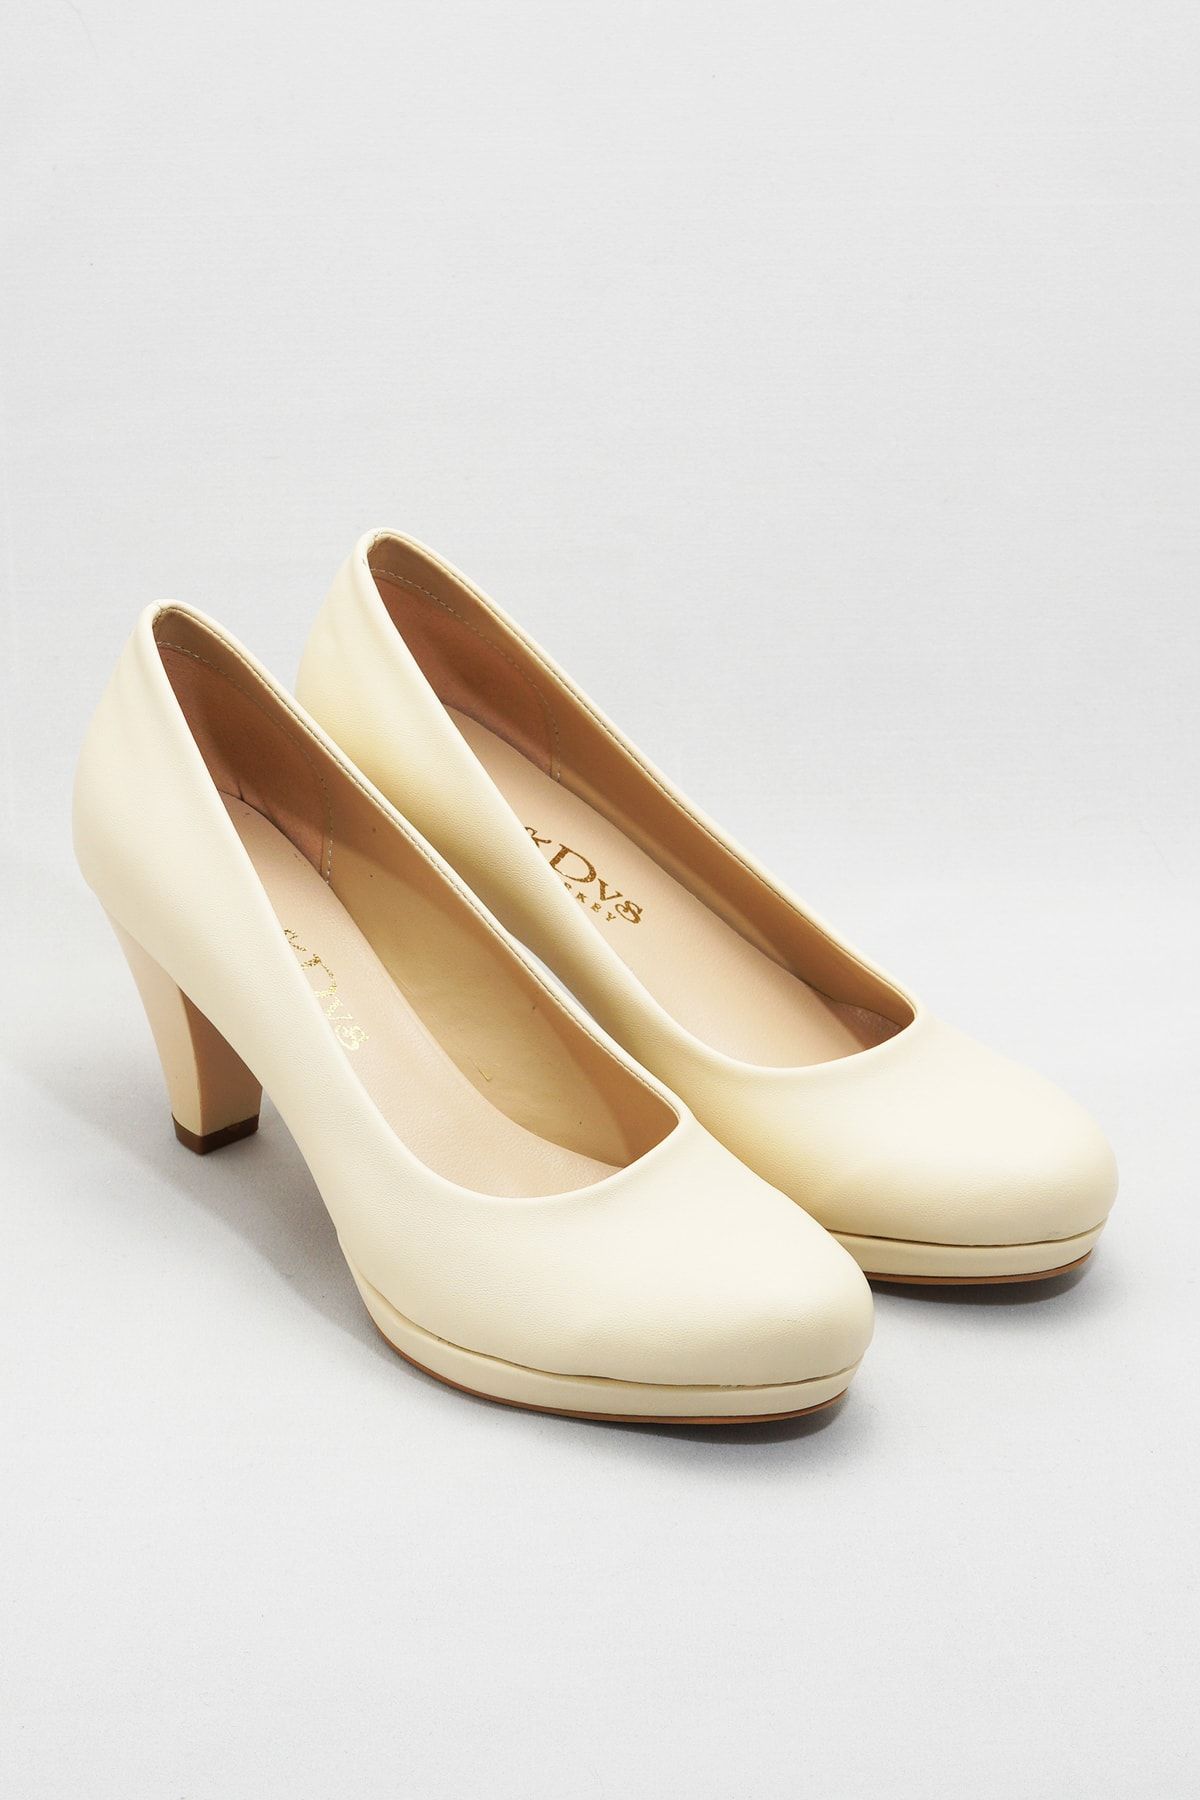 Çnr&Dvs Ten Kadın Klasik Topuklu Ayakkabı CNR901Ten Cilt